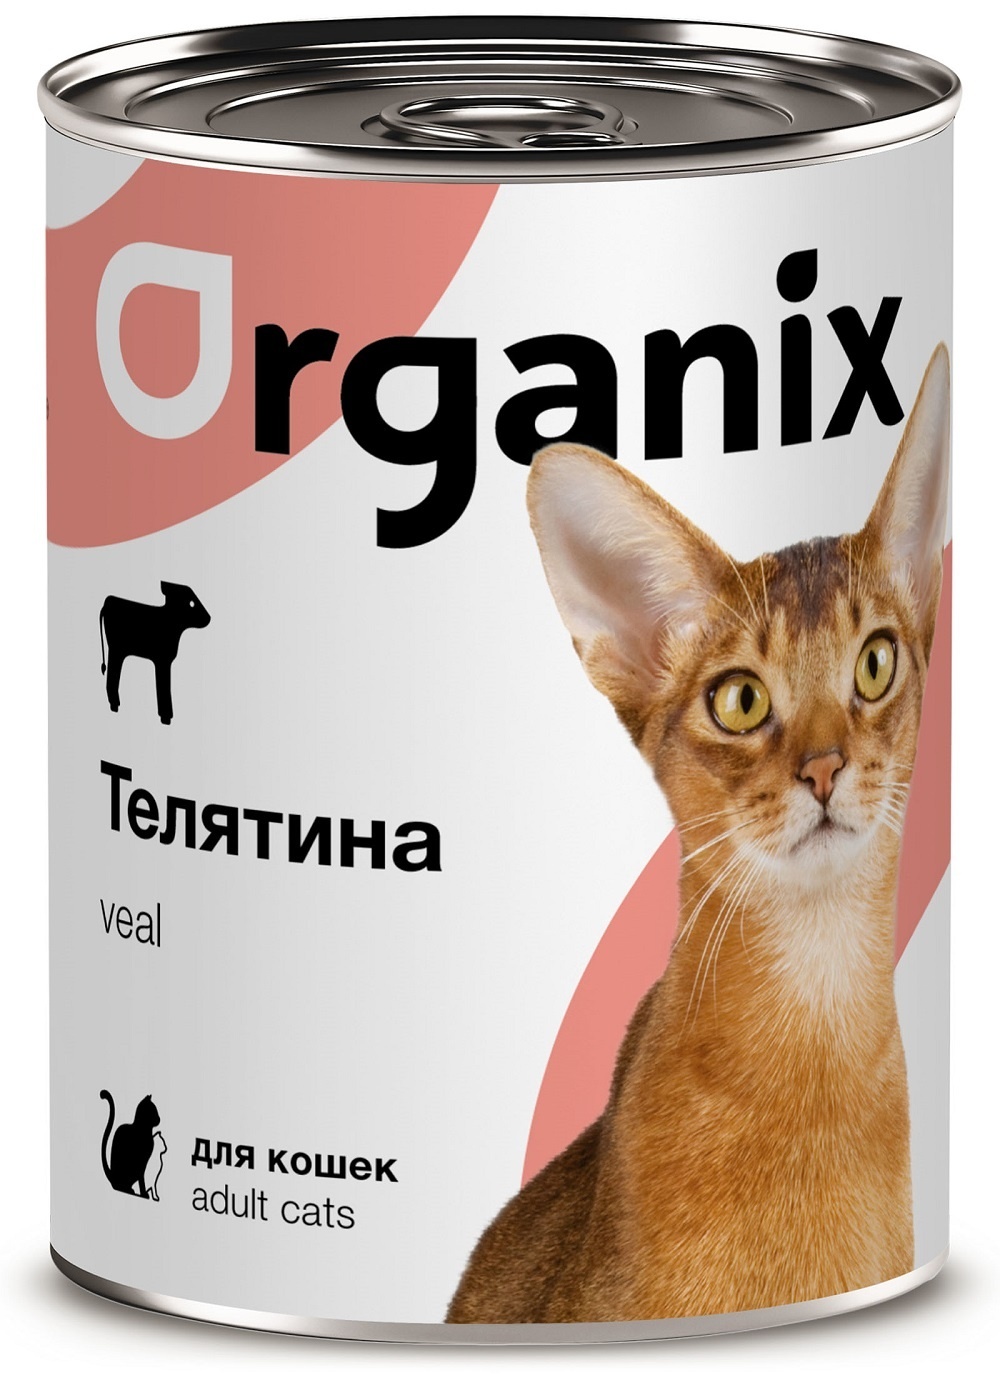 Organix консервы Organix консервы с телятиной для кошек (100 г) organix консервы organix монобелковые премиум консервы для собак с уткой 100 г